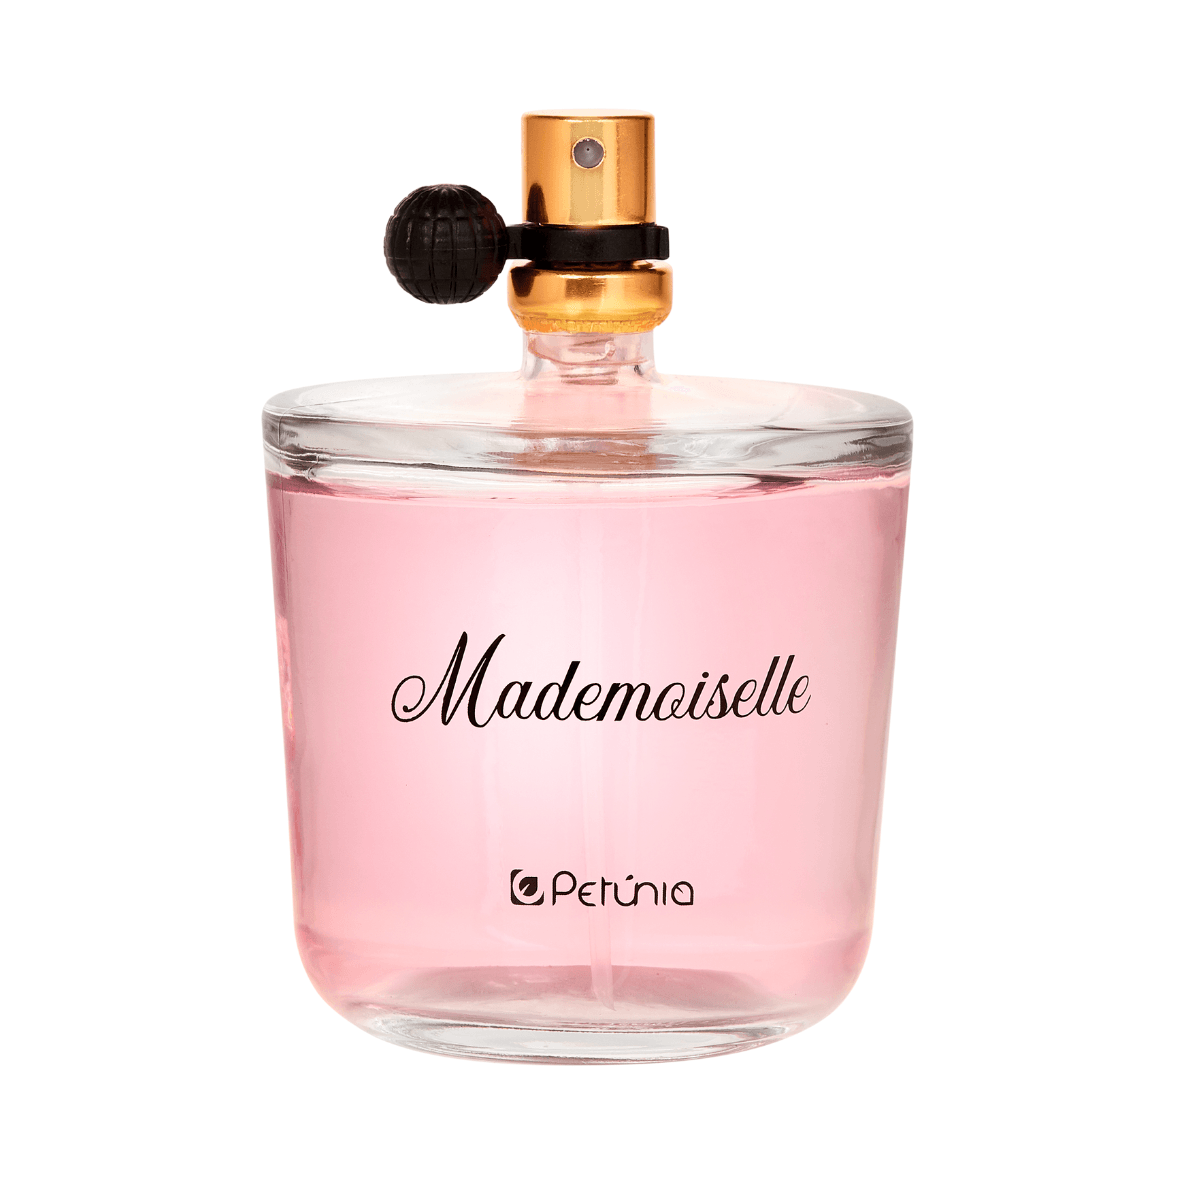 Perfume--Feminino-Eau-De-Toilette-Mademoiselle-100Ml---Petunia-YEN-1.42008.0